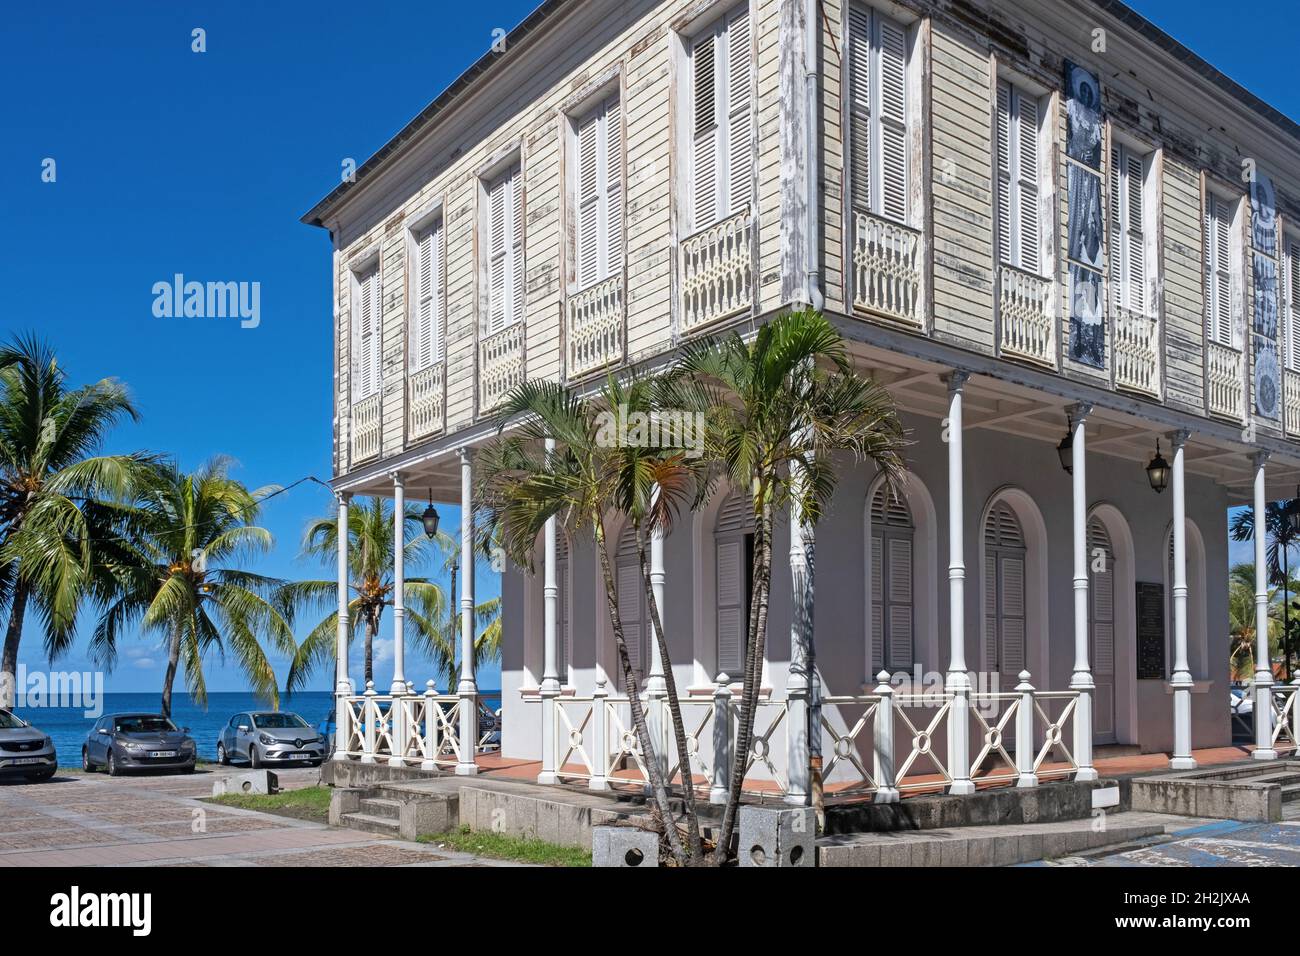 Ancienne Chambre de commerce de style colonial français à Saint-Pierre, première colonie française permanente sur l'île de Martinique en mer des Caraïbes Banque D'Images